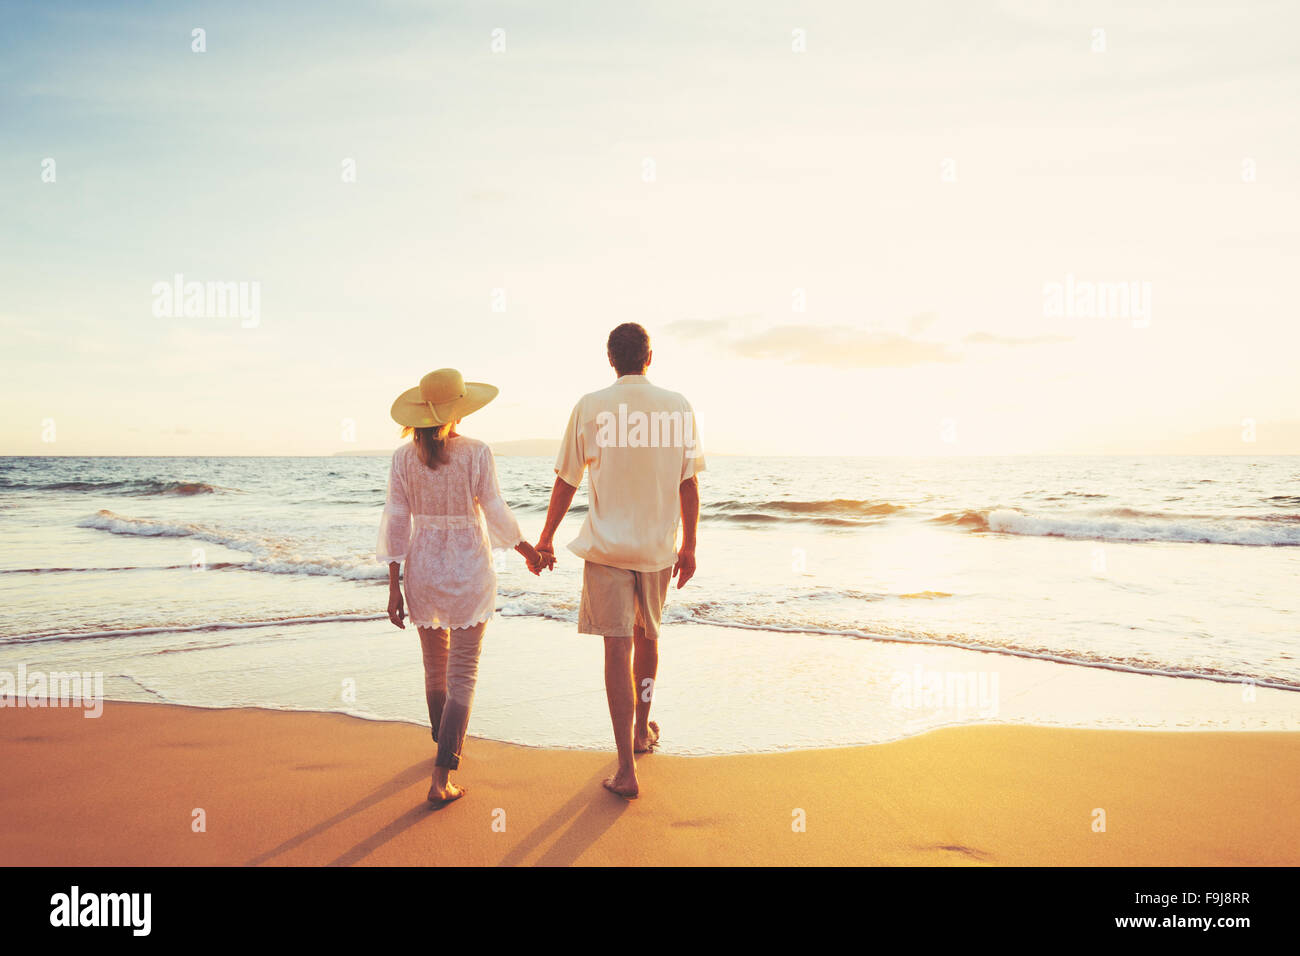 Glücklich applying romantische paar schönen Sonnenuntergang am Strand genießen. Reisen-Urlaub-Ruhestand-Lifestyle-Konzept. Stockfoto